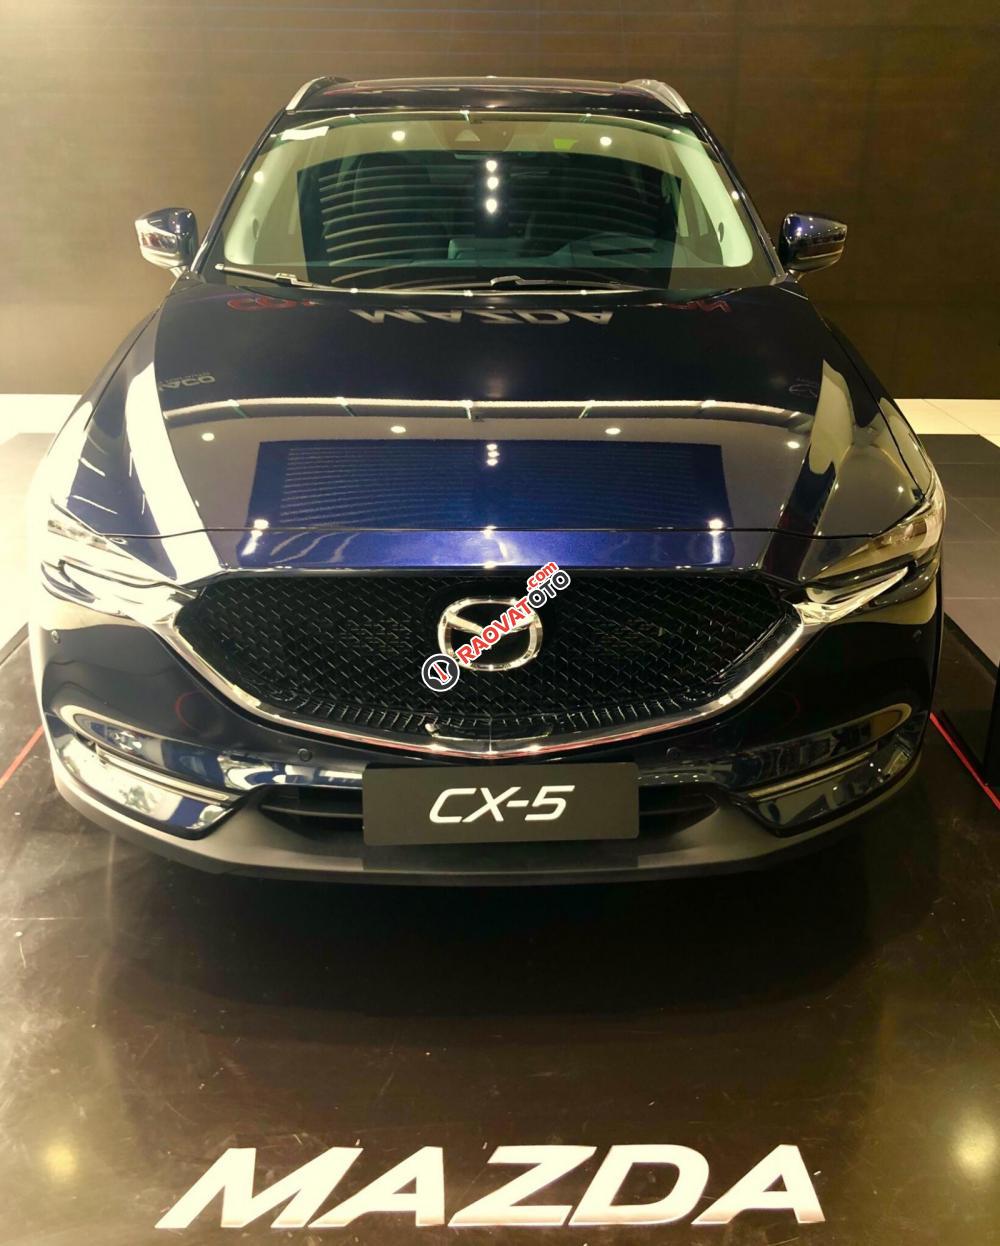 Bán Mazda CX5 giá từ 849tr xe giao ngay, đủ màu, phiên bản, liên hệ ngay với chúng tôi để nhận được ưu đãi tốt nhất-4